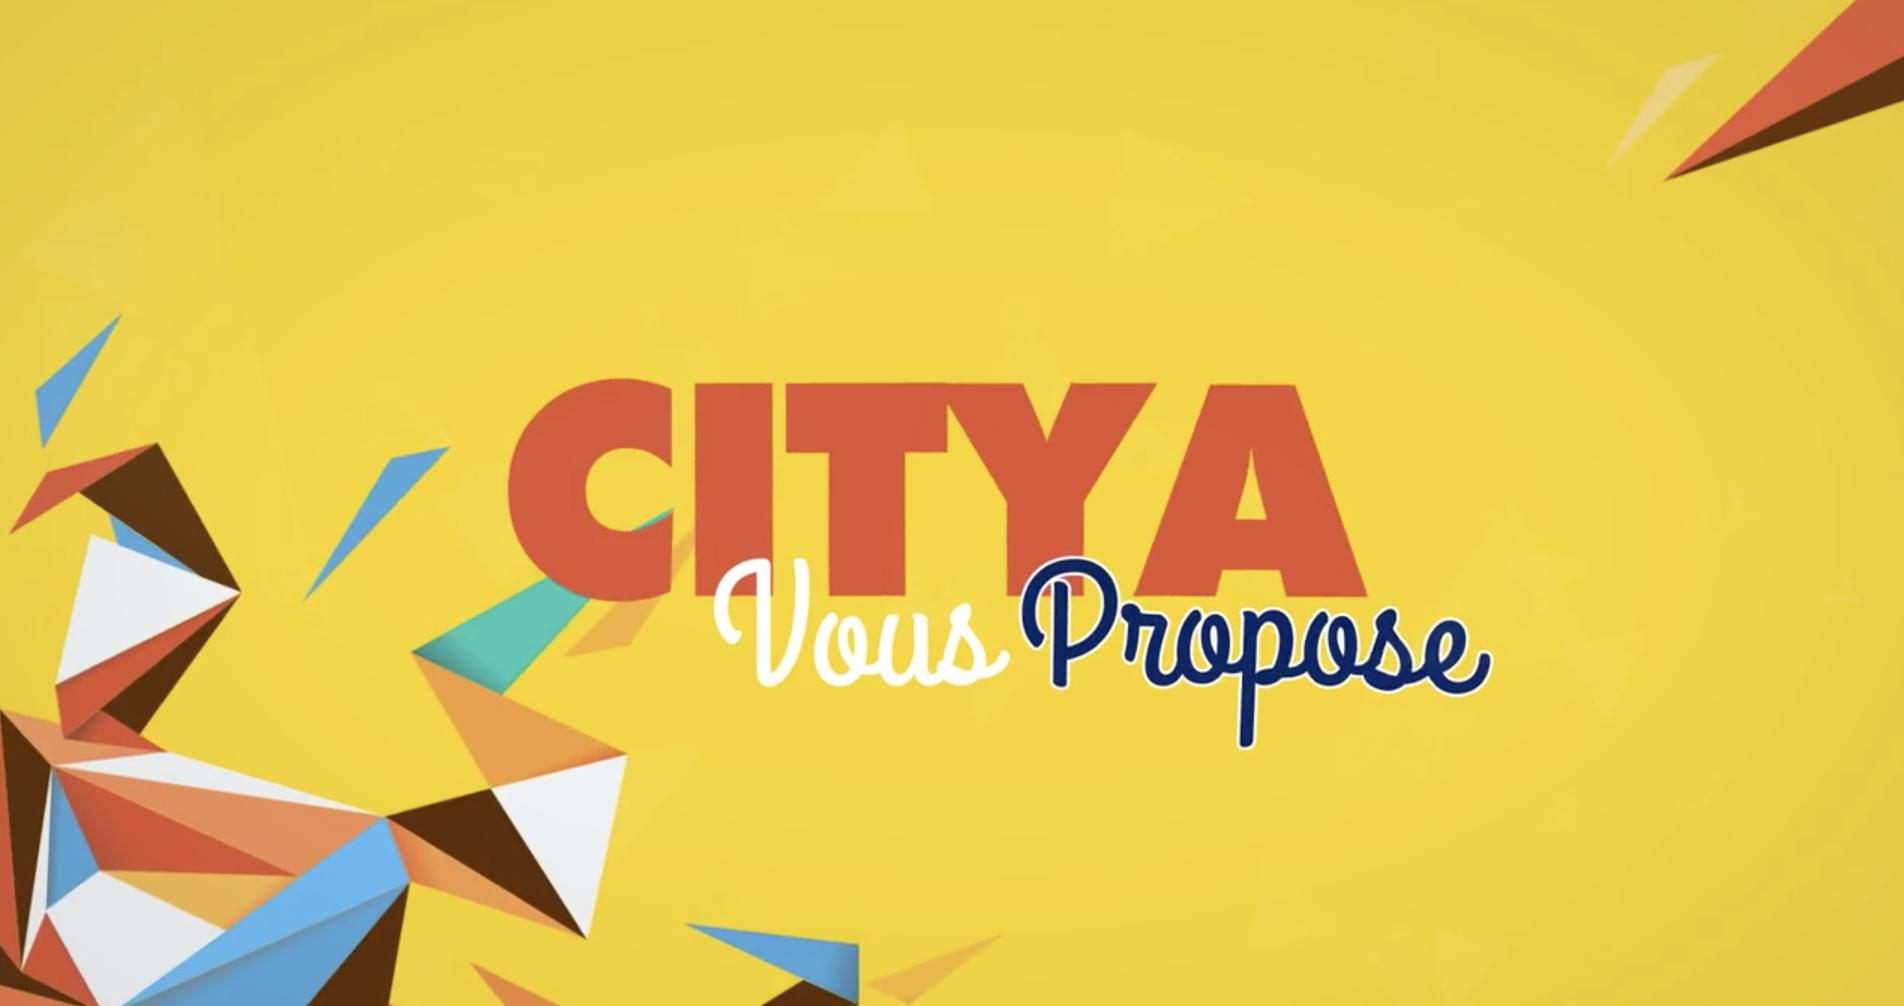 Le challenge de l'été pour les collaborateurs Citya